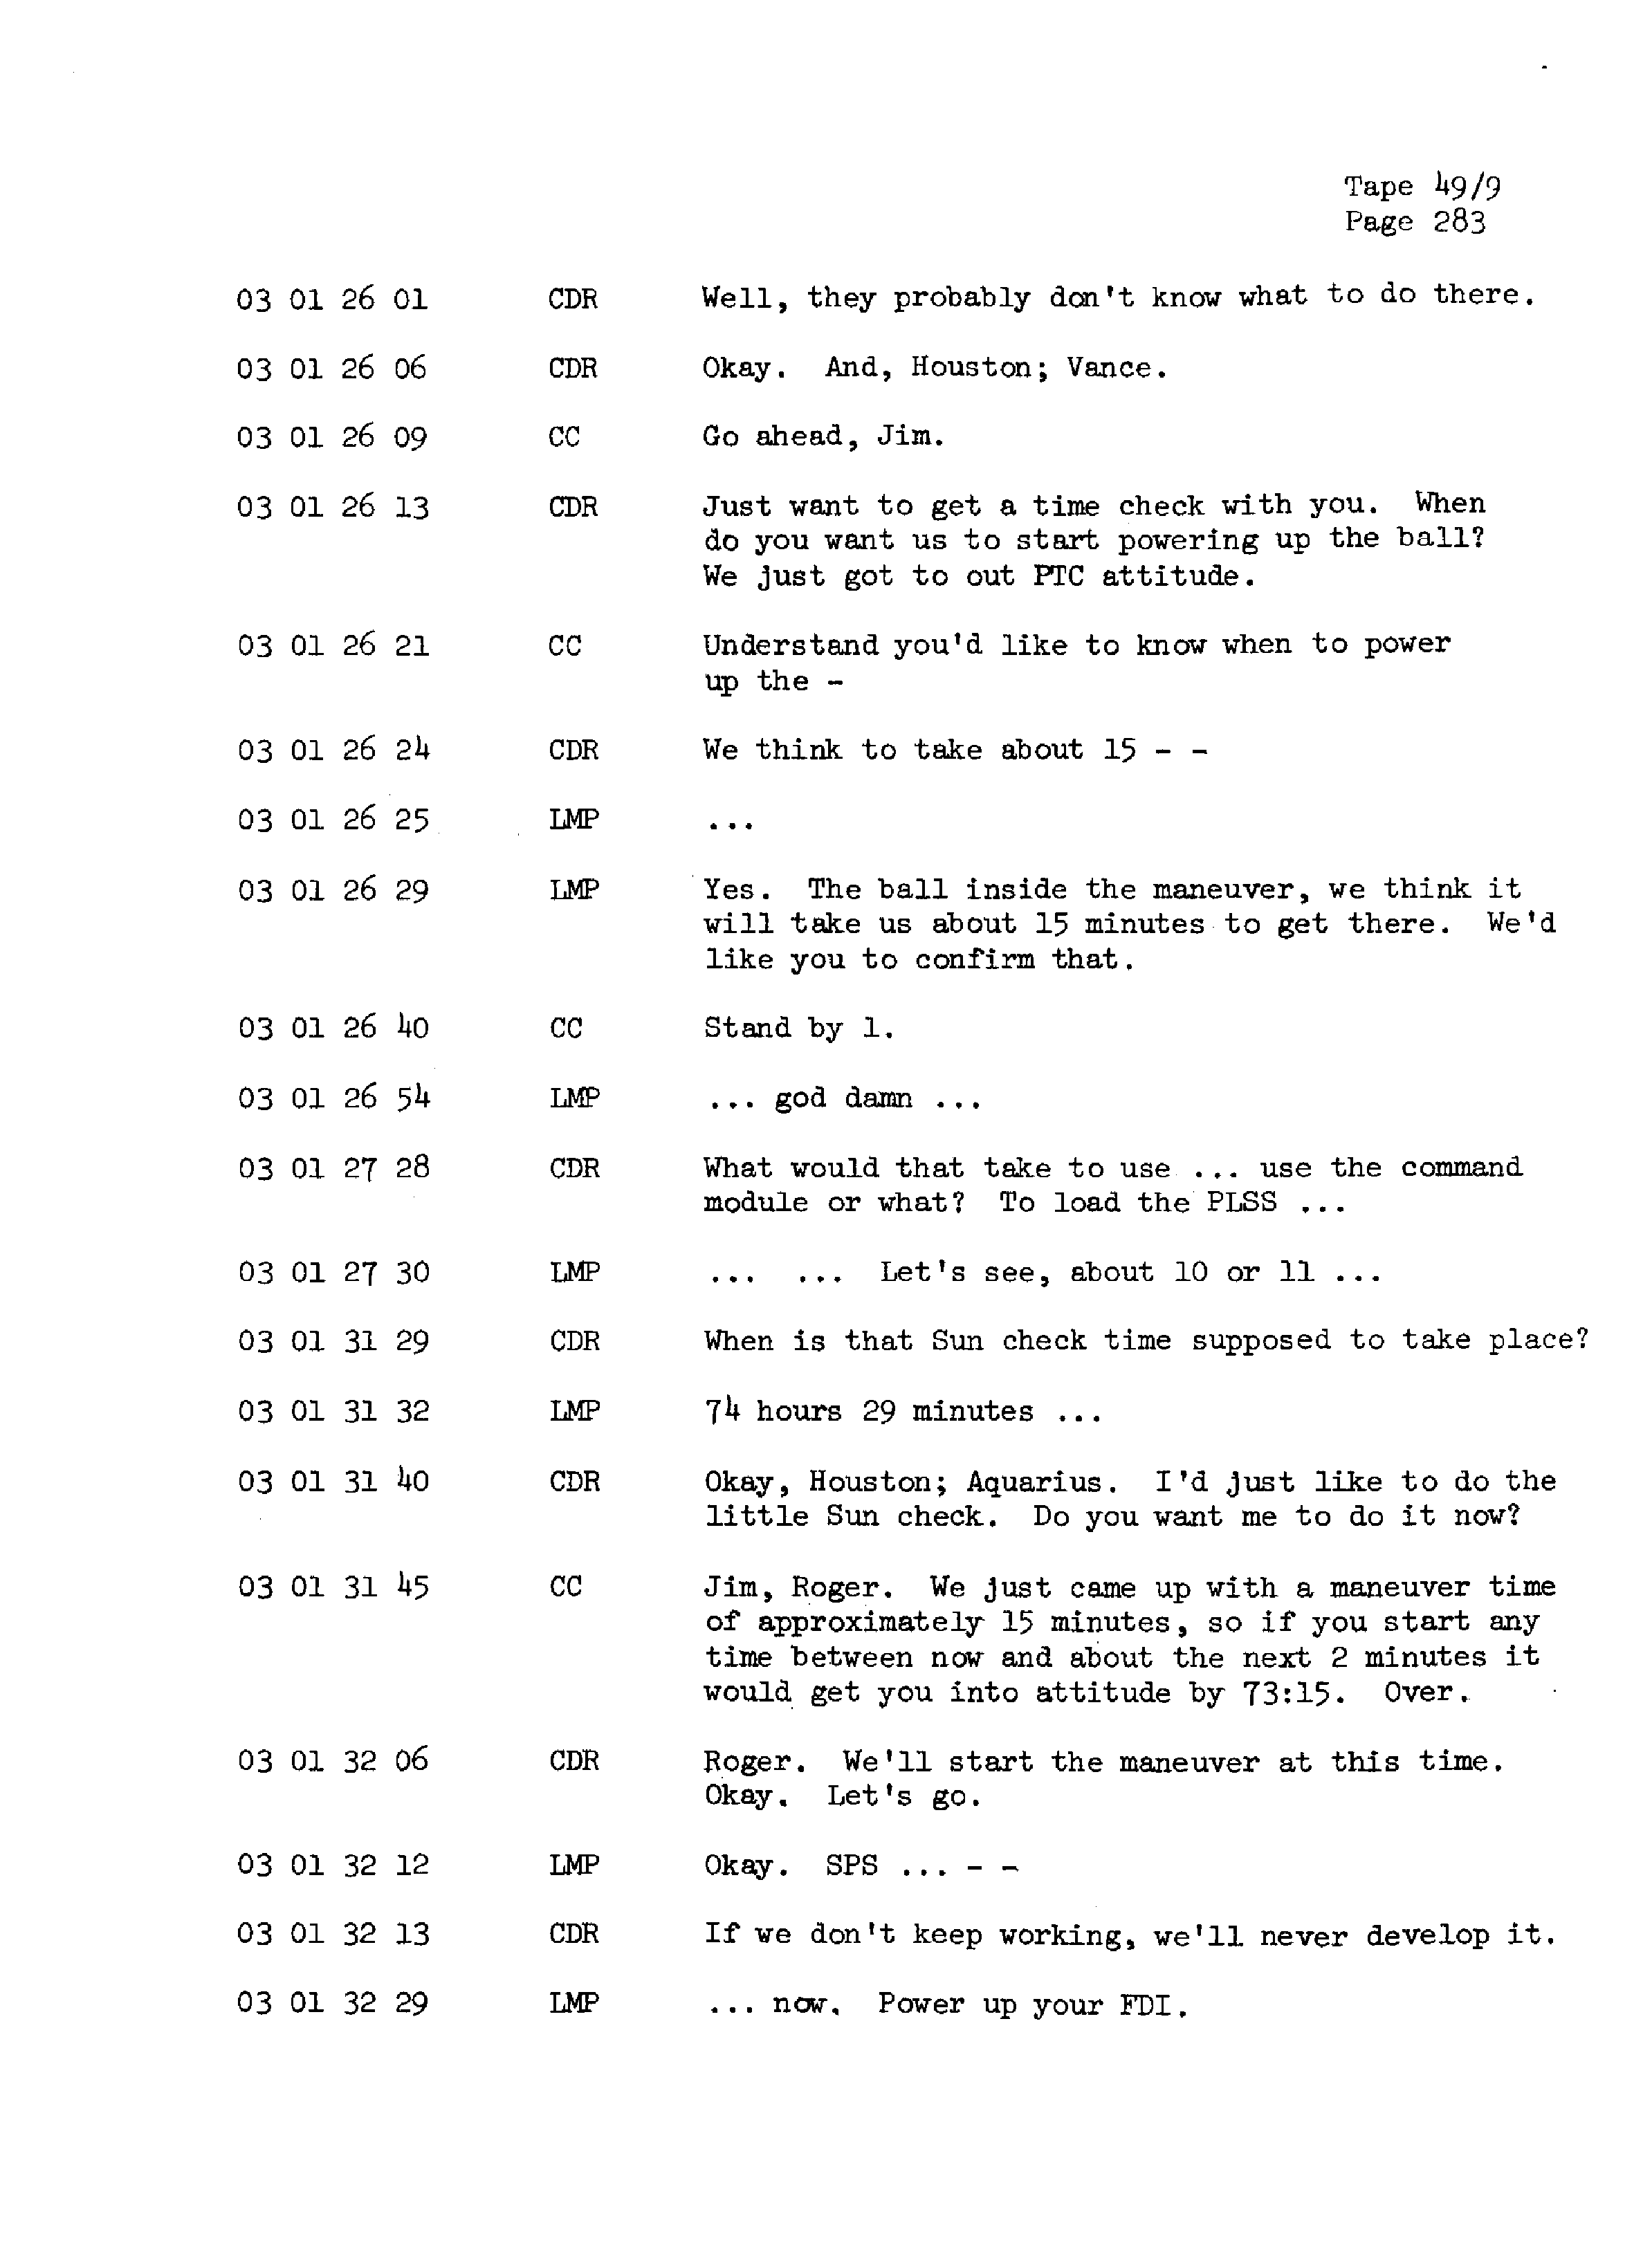 Page 290 of Apollo 13’s original transcript